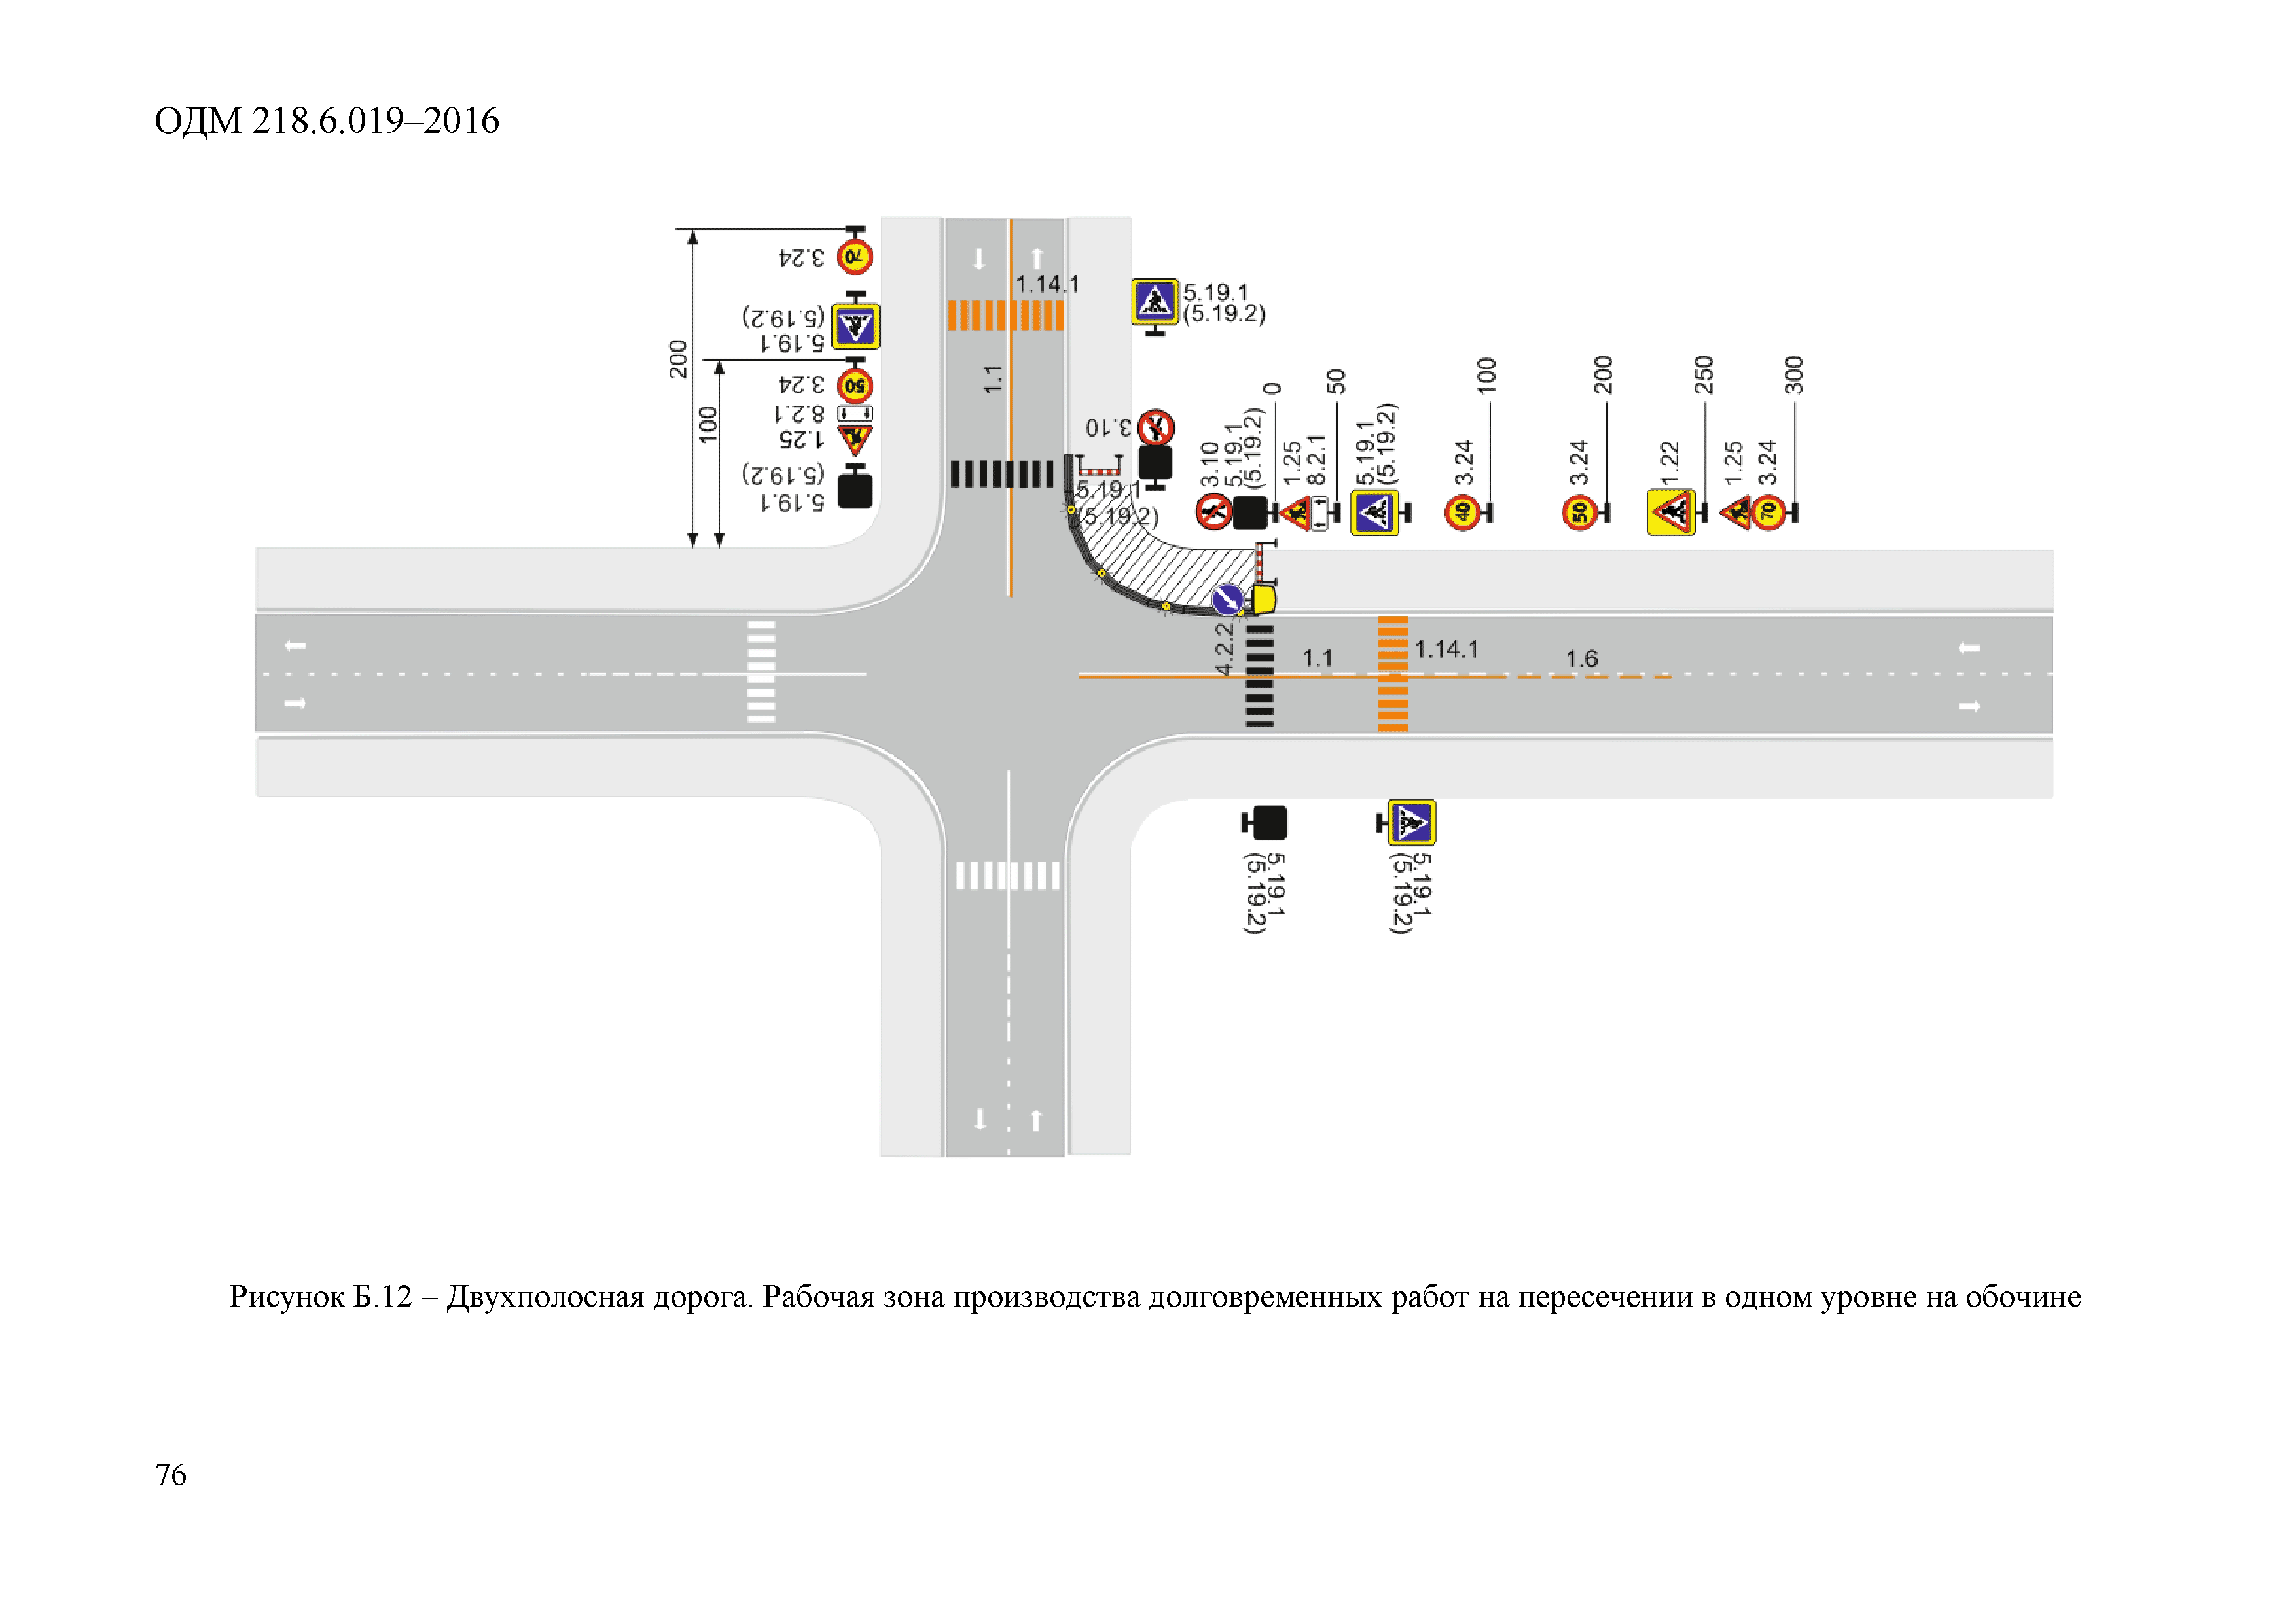 Программа для проектирования схем дорожного движения